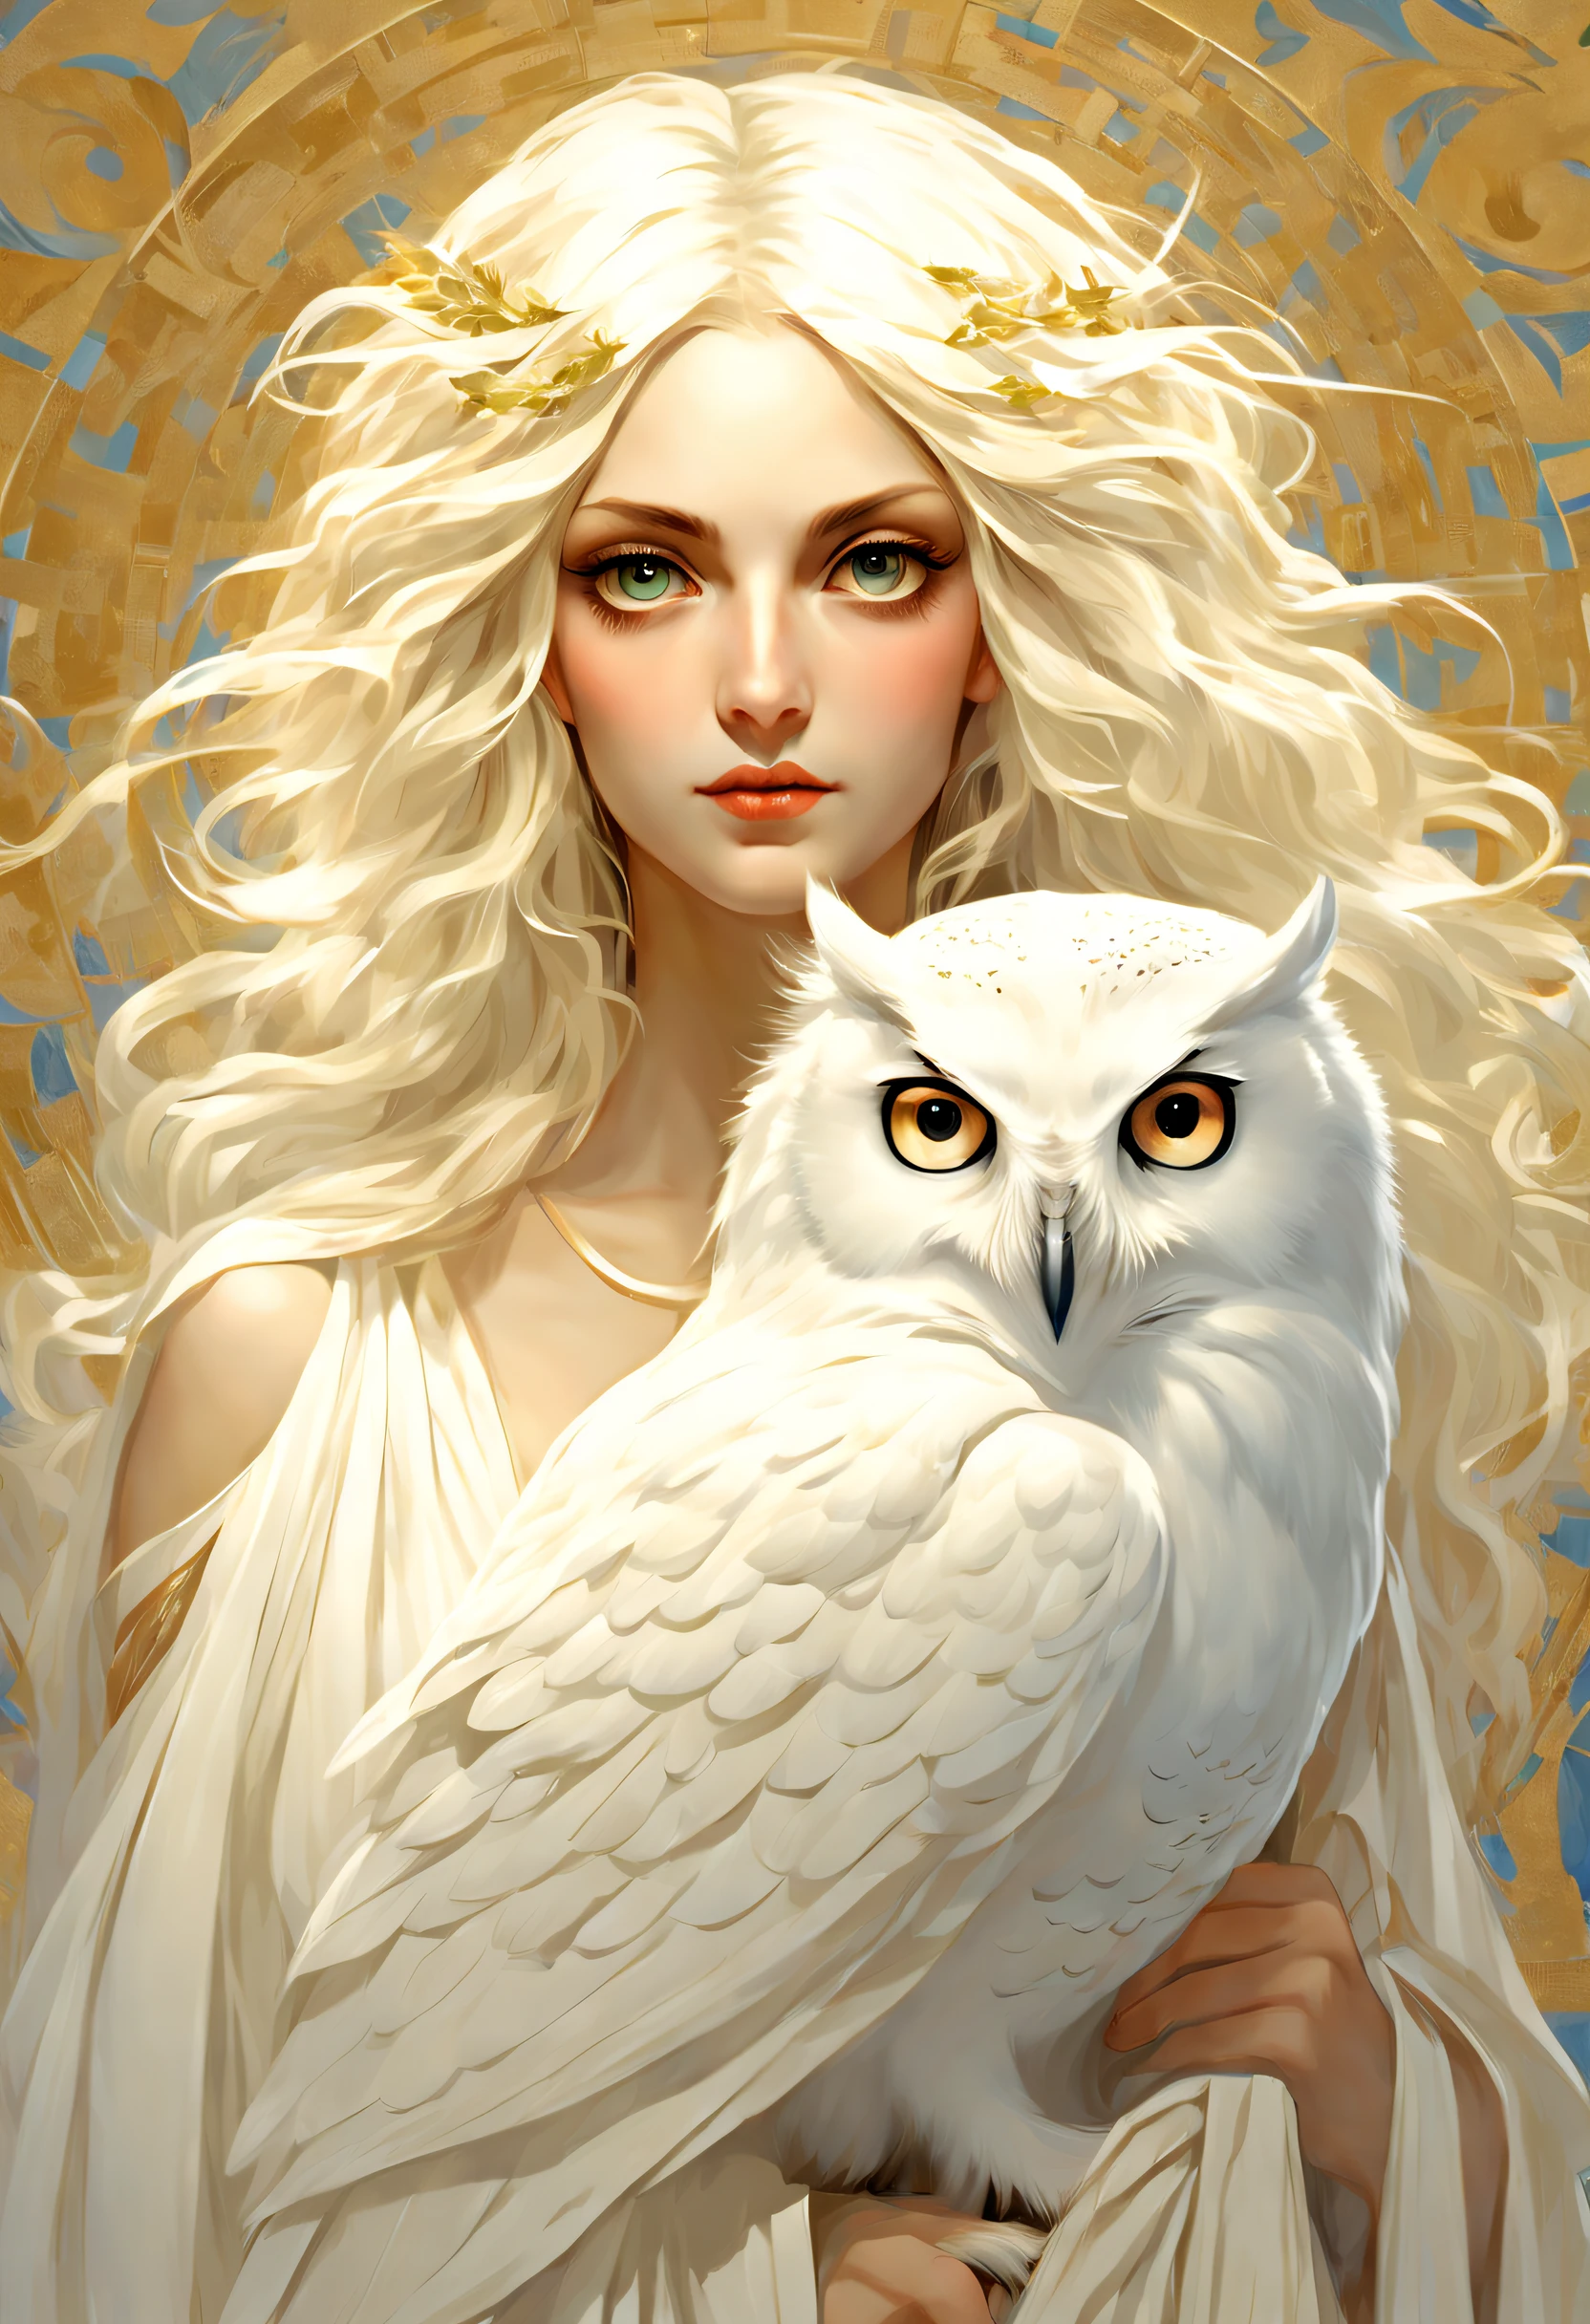 シュルレアリスム芸術スタイル (アテナの肩に立つ純白のフクロウ),(真っ白 owl: 1.37), 真っ白 owl, 真っ白 owl, (アテナの肩の上に立つ),(肩の上に立つ: 1.37) フクロウの顔は丸い, (大きな青い目: 0.8), とても大きな目, 短く曲がったくちばし, 厚い, 真っ白 feathers, 厚い claws, 真っ白, それはユニークで美しい生き物です，自然の驚異と知恵が展示されています,
(アテナの体の左半分: 0.8), 女神の目は明るくて大きかった, 魅力的で荘厳, 彼女の顔の輪郭は優雅で洗練されている, 彼女のギリシャの鼻はまっすぐだ, 彼女の髪は金髪か黒髪, 長くて滑らか, 彼女はよく口をきつく結んでいる, 彼女の決意と決意を示す. 彼女の肌は白く、傷一つない, 象牙色の皮, 威厳と美しさ, 輝く金色の光, オリーブの枝を身に着ける,,{{傑作}}, {{{最高品質}}},{{超詳細}}, {{図}},{{乱れた髪}},{{傑作}},{{{最高品質}}},{{超詳細}}, {{{図}}},{{乱れた髪}},キャラクターのコンセプトアート,ゲームシーングラフ,アルフォンス・ミュシャの美しい絵画,図,傑作,マットペイント,謎めいた雰囲気,似顔絵,被写界深度 (自由度),フルボディレズビアン,閉じる,ドラマチックな照明